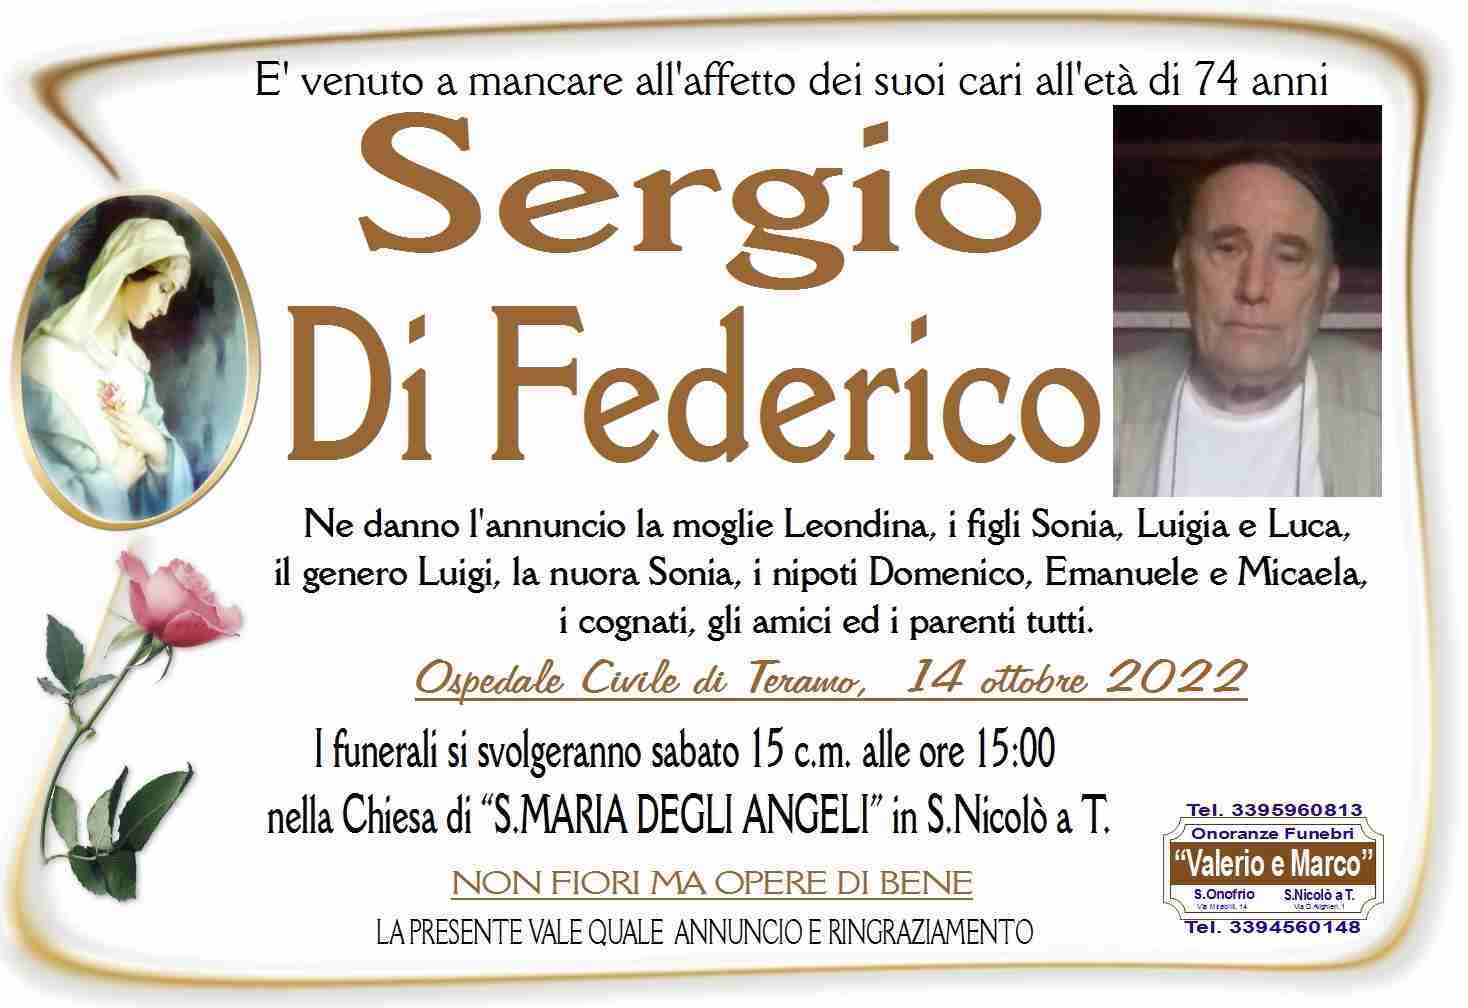 Sergio Di Federico